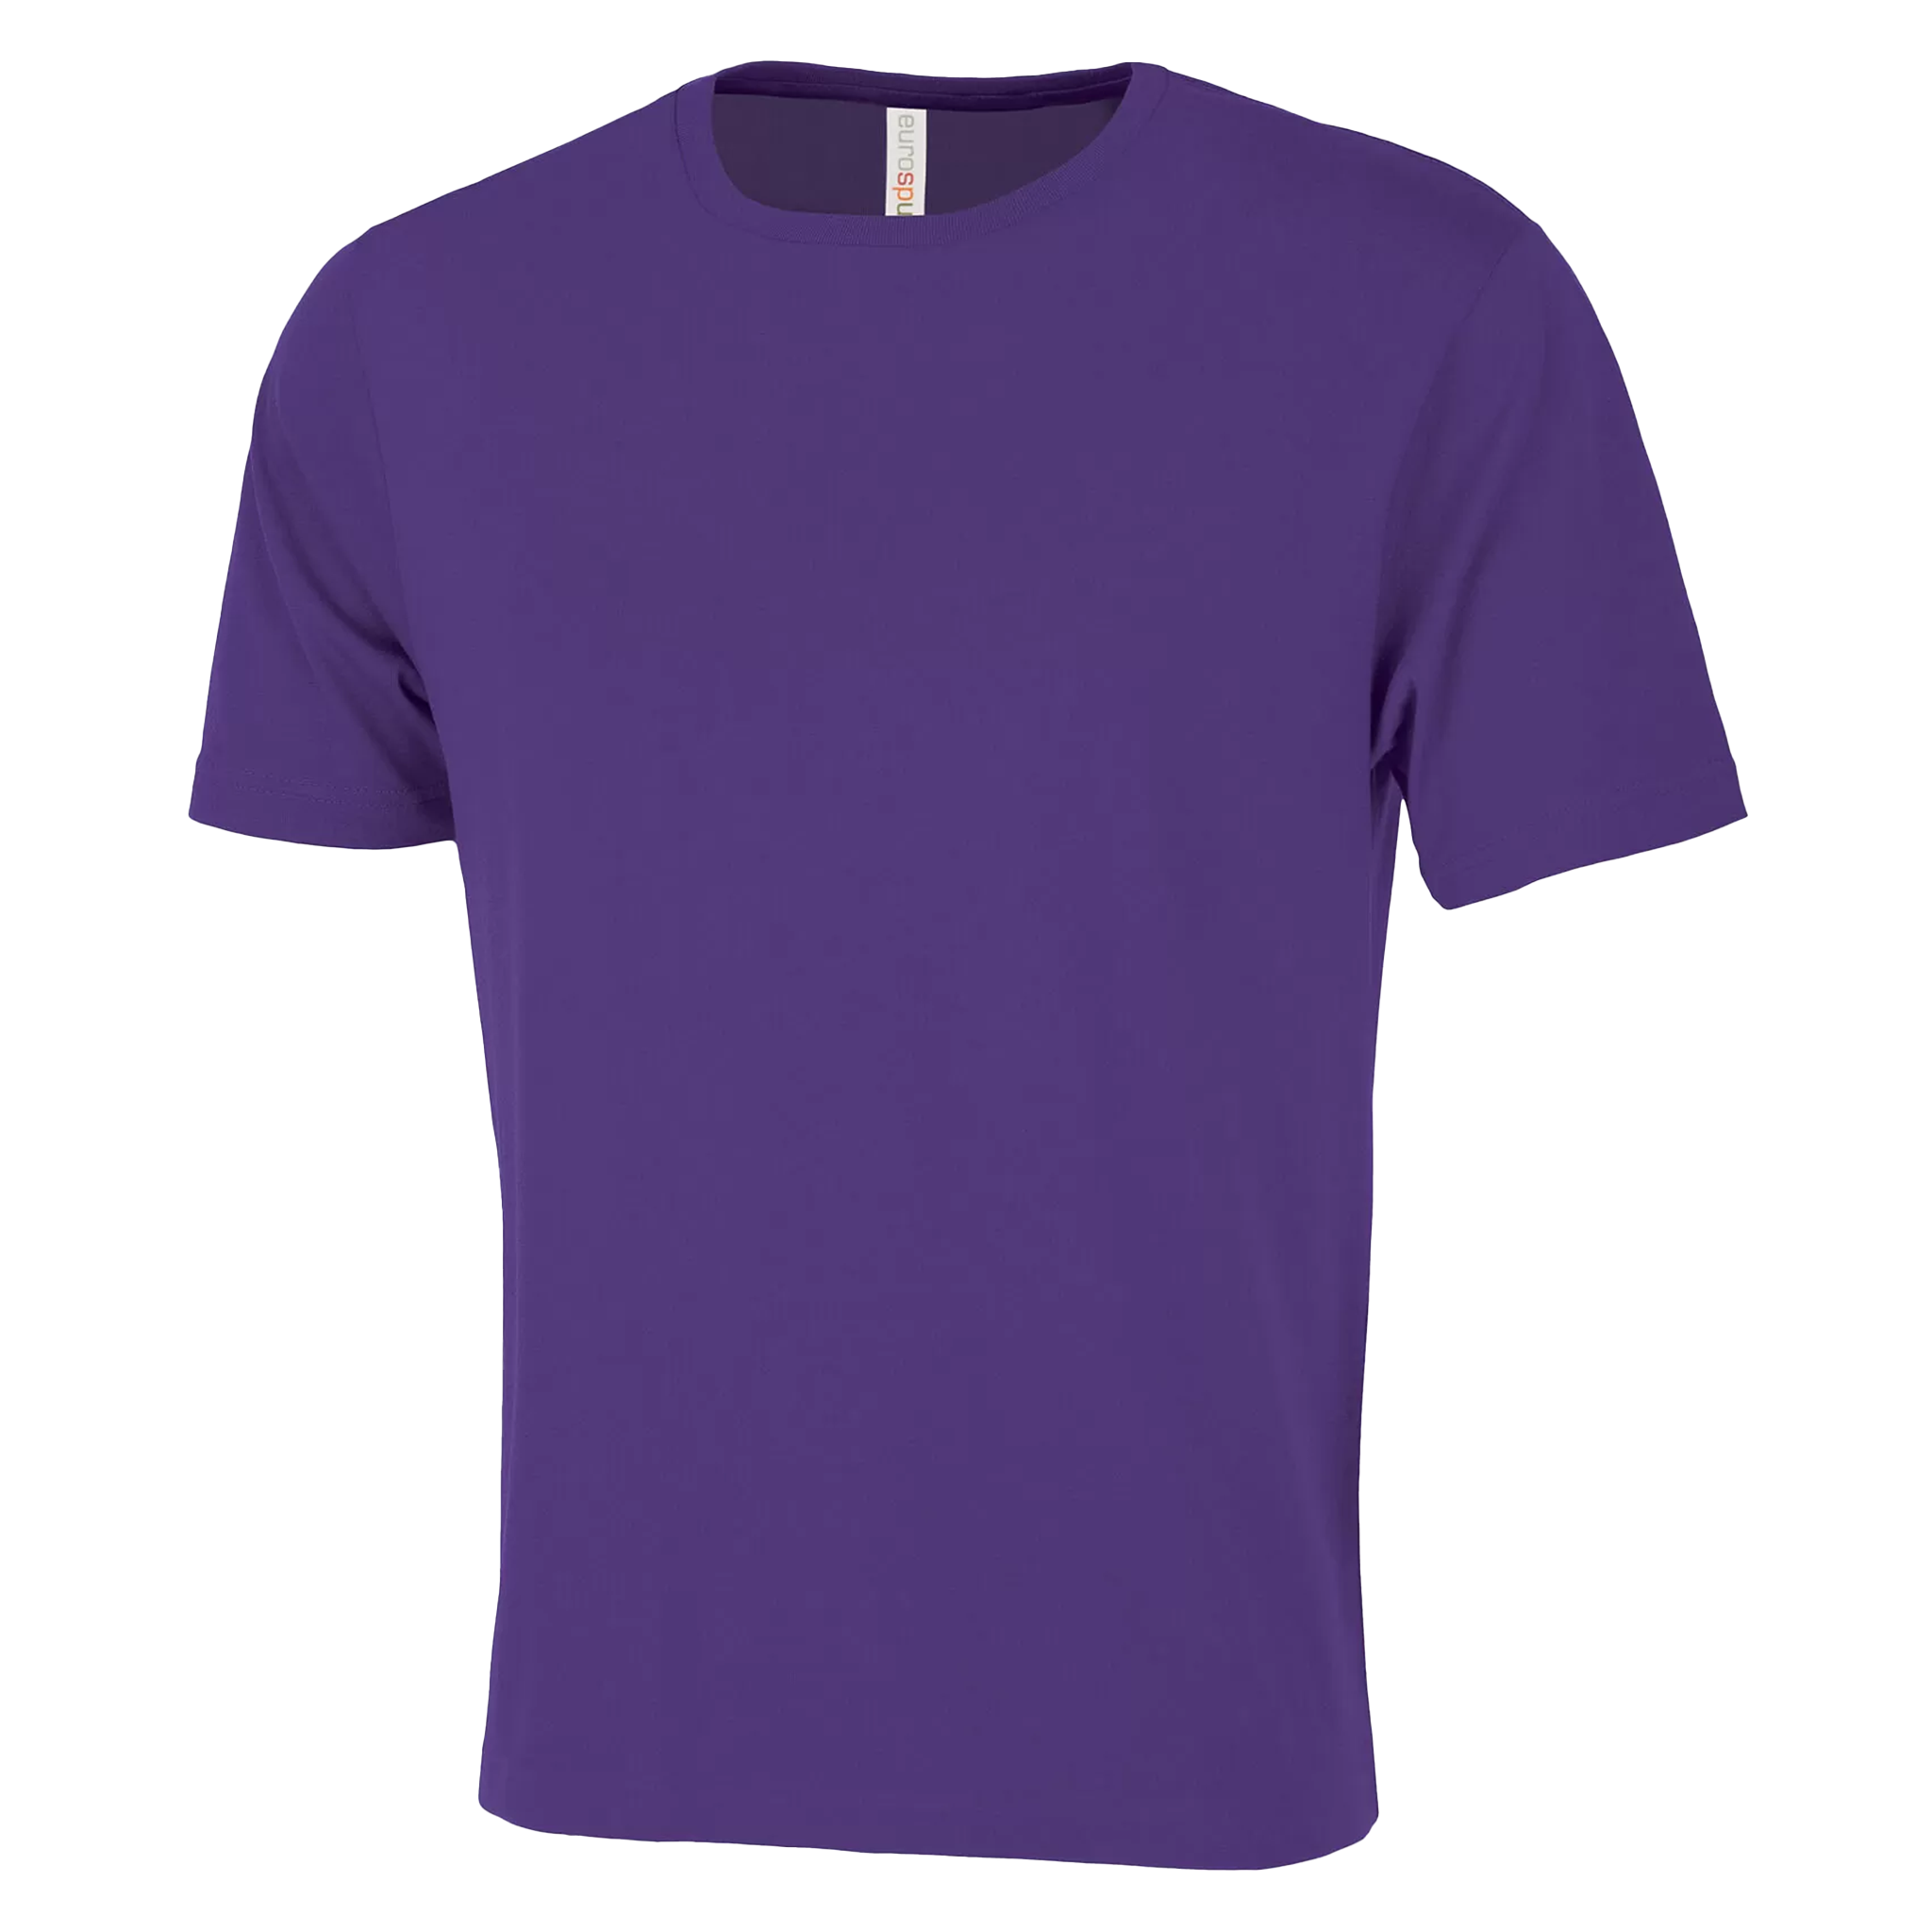 ATC Eurospun Ring Spun T-Shirt - Men's Sizing XS-4XL - Purple